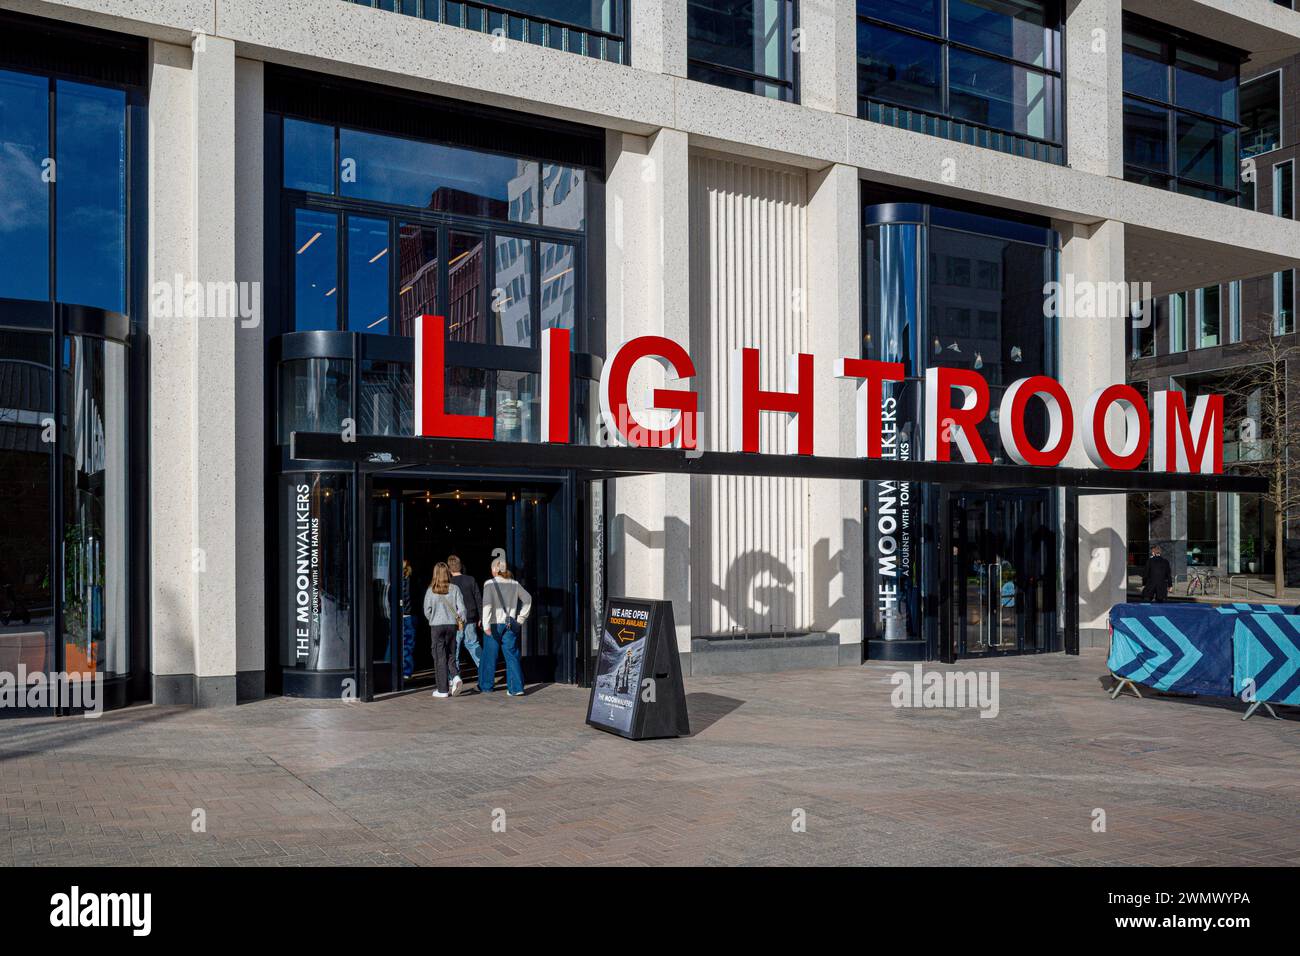 Lightroom Londres. Lightroom Art Space, Lightroom Art Gallery est un grand espace artistique immersif situé près de Kings Cross, dans le centre de Londres. Ouvert en 2023. Banque D'Images